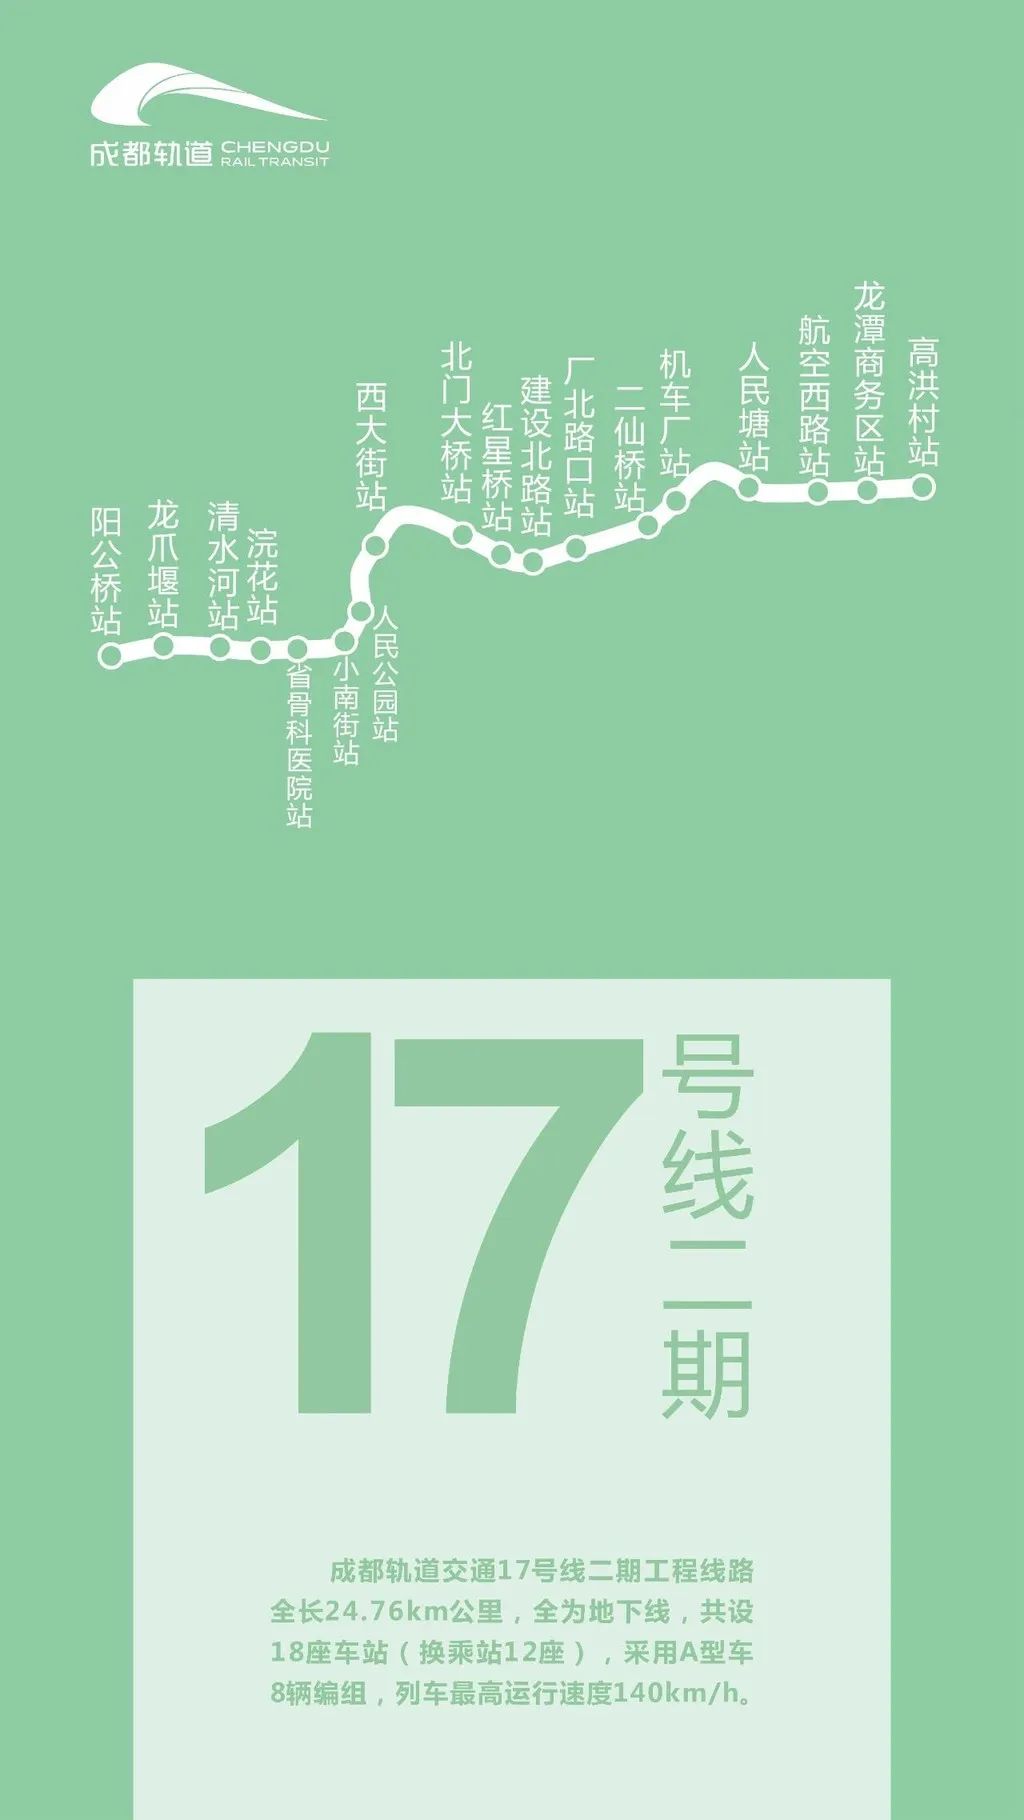 成都17号线二期走向_成都1号地铁南延线_成都2号线西延线站点